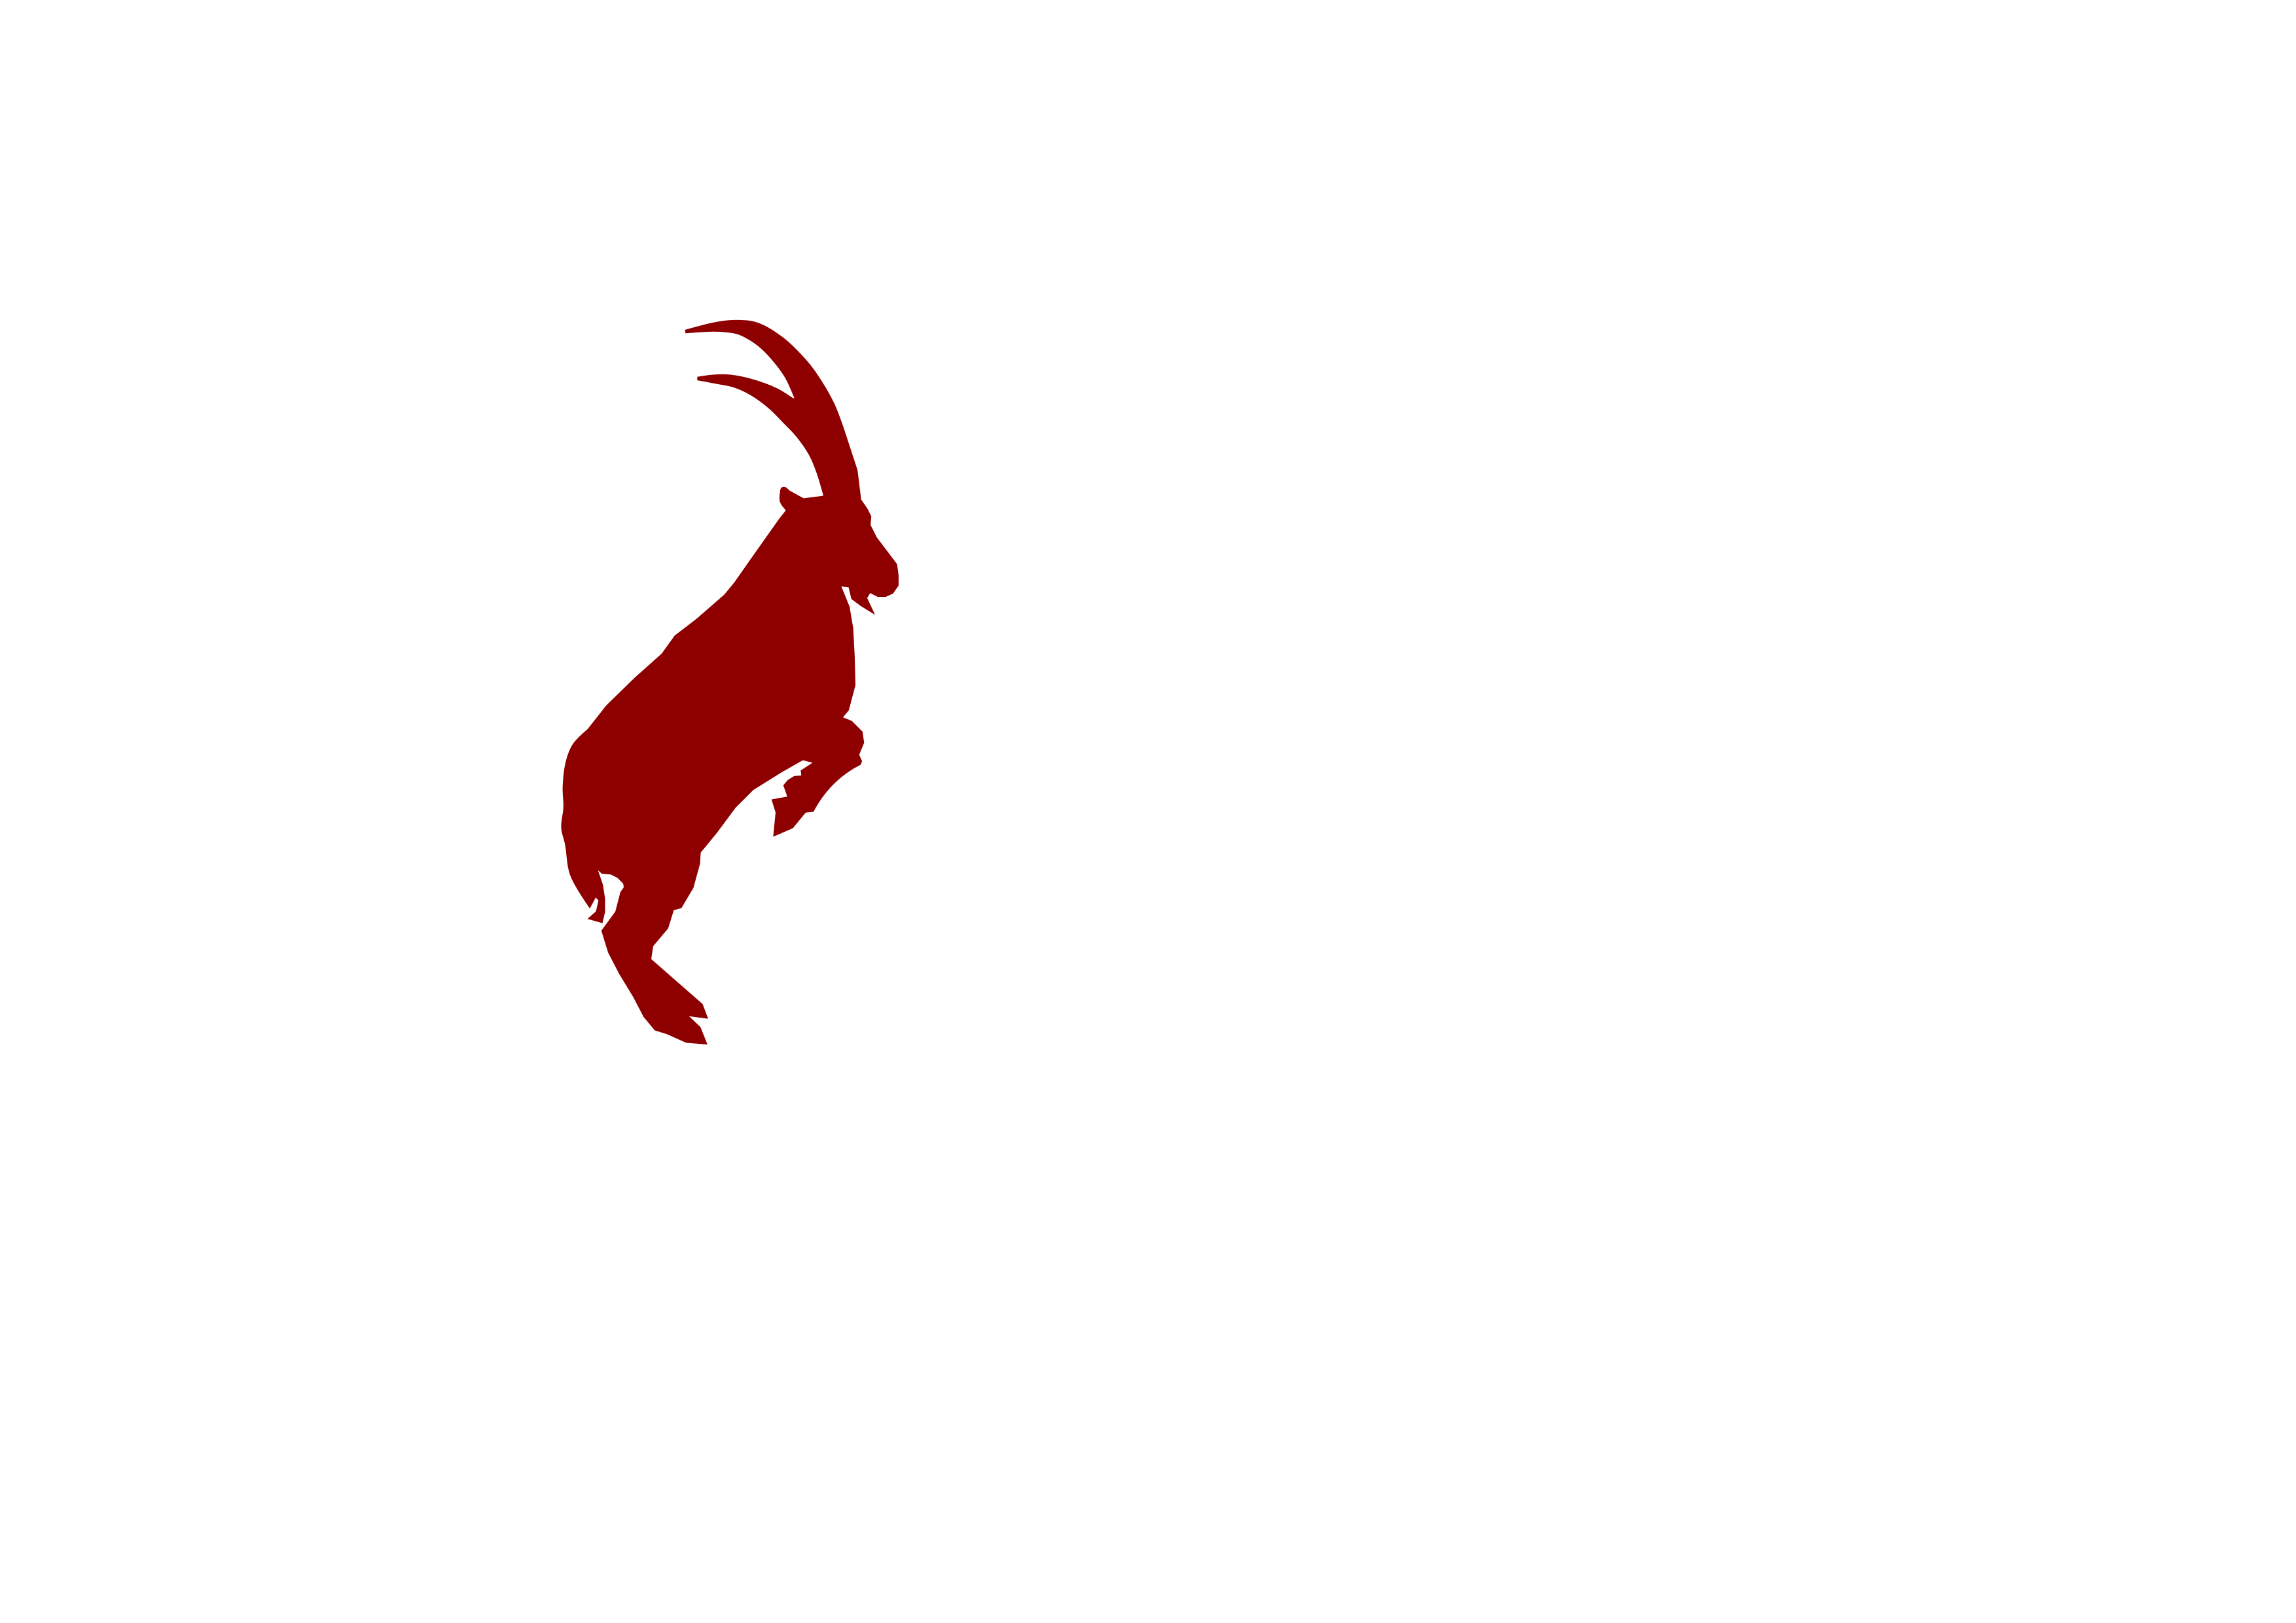 Logo Capricorn weiß